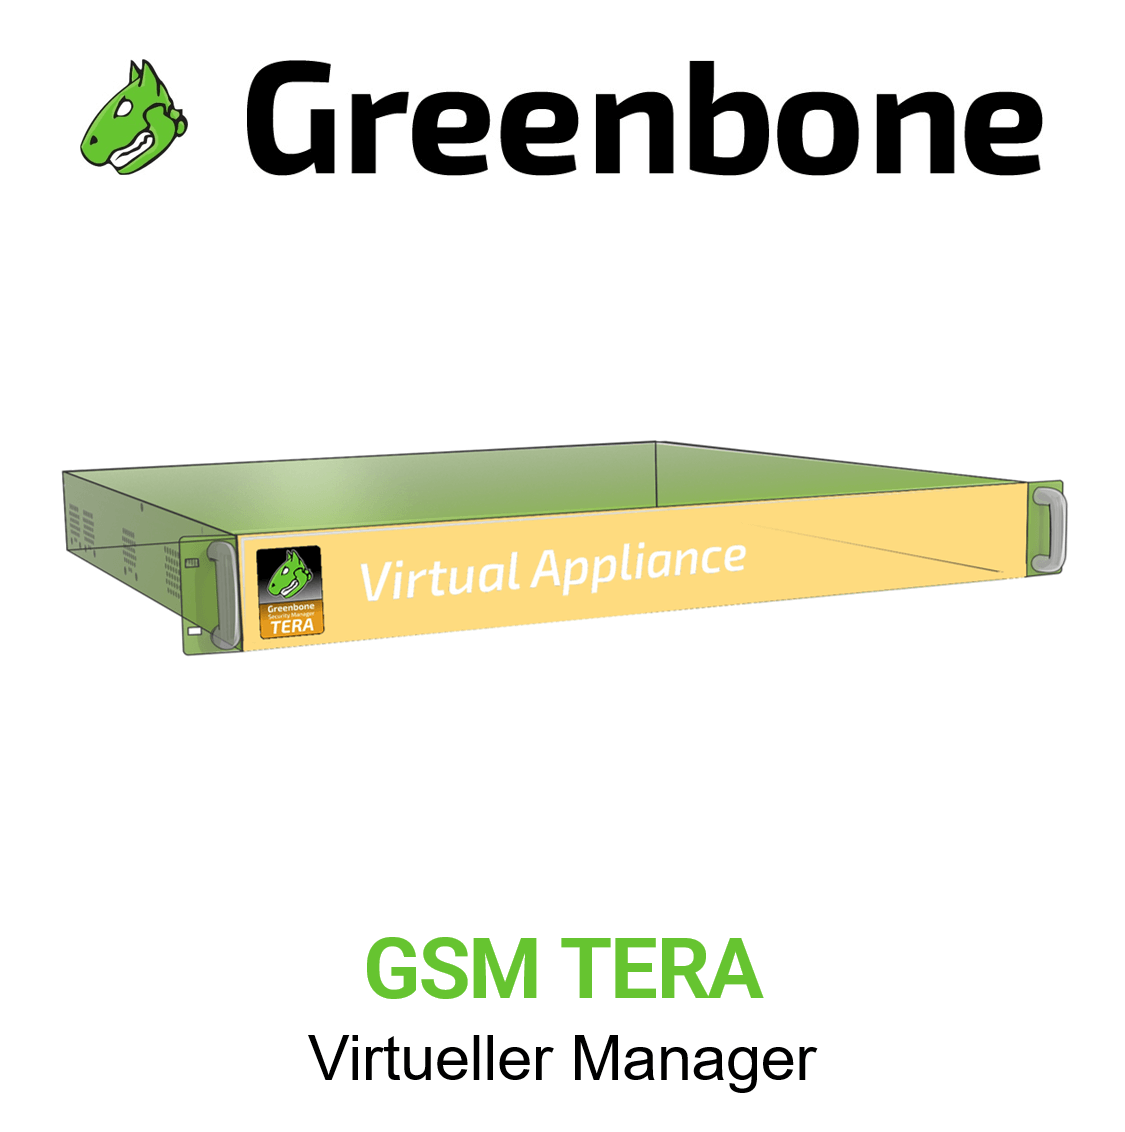 Greenbone GSM-TERA Virtuelle Appliance Vorschaubild mit Greenbone logo und Modellbezeichnung